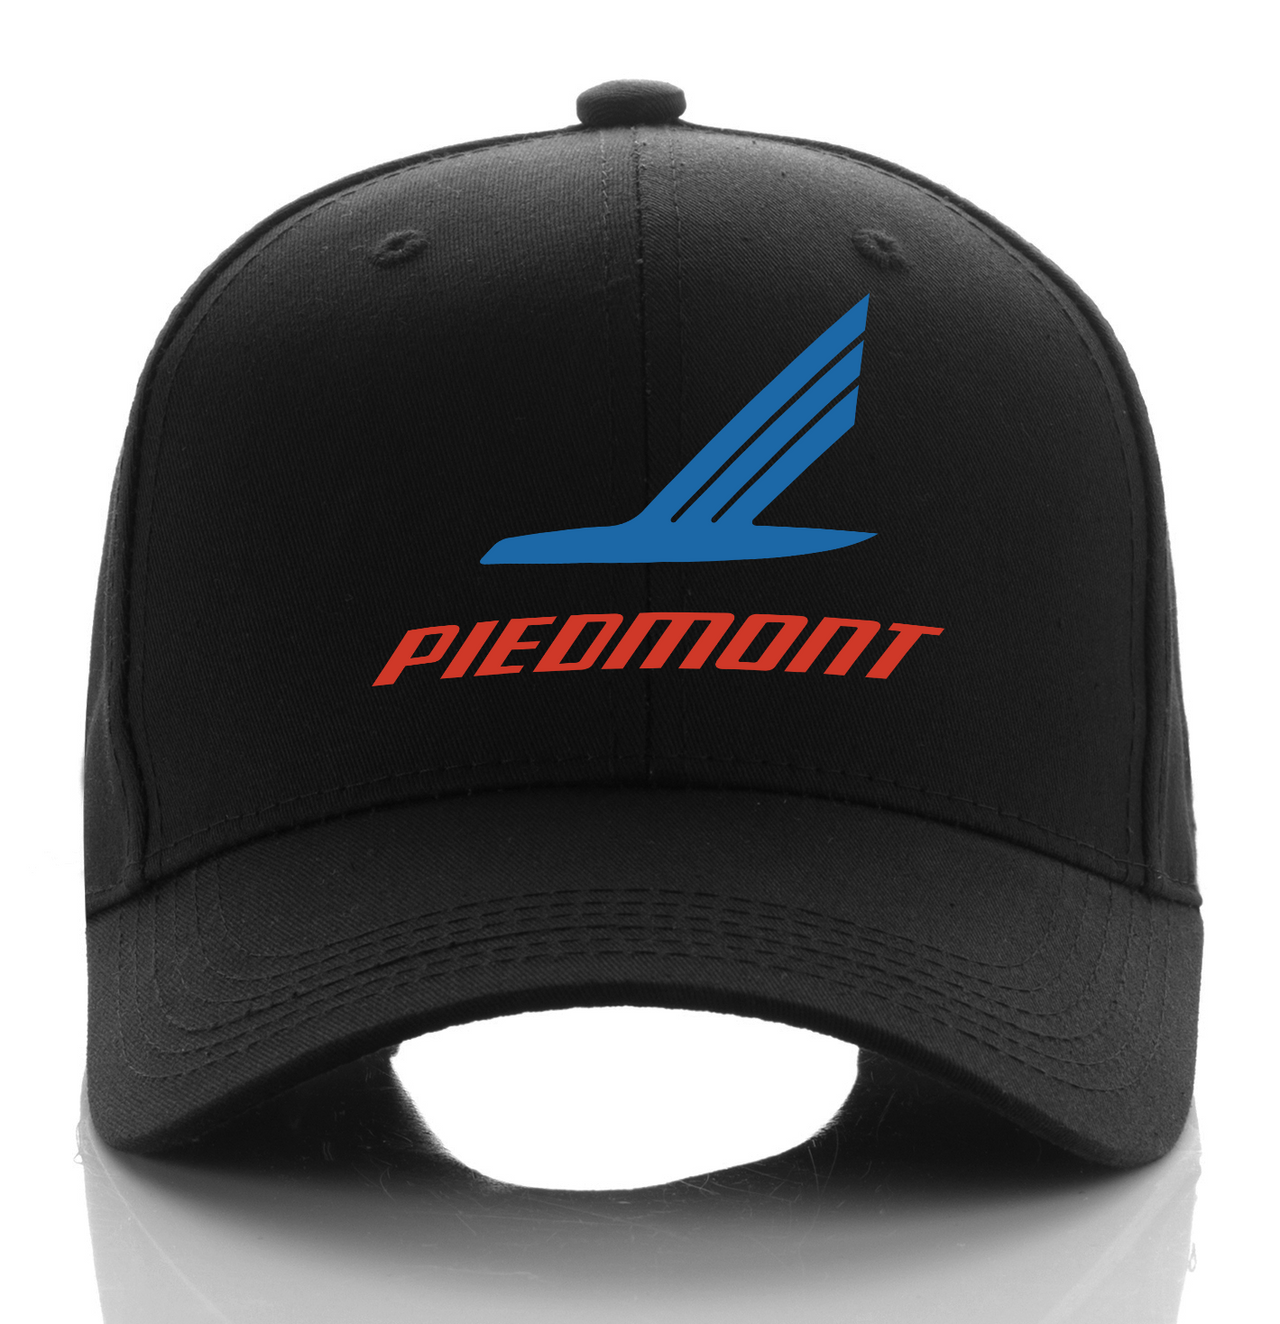 PIEDMONT AIRLINE DESIGNED CAP